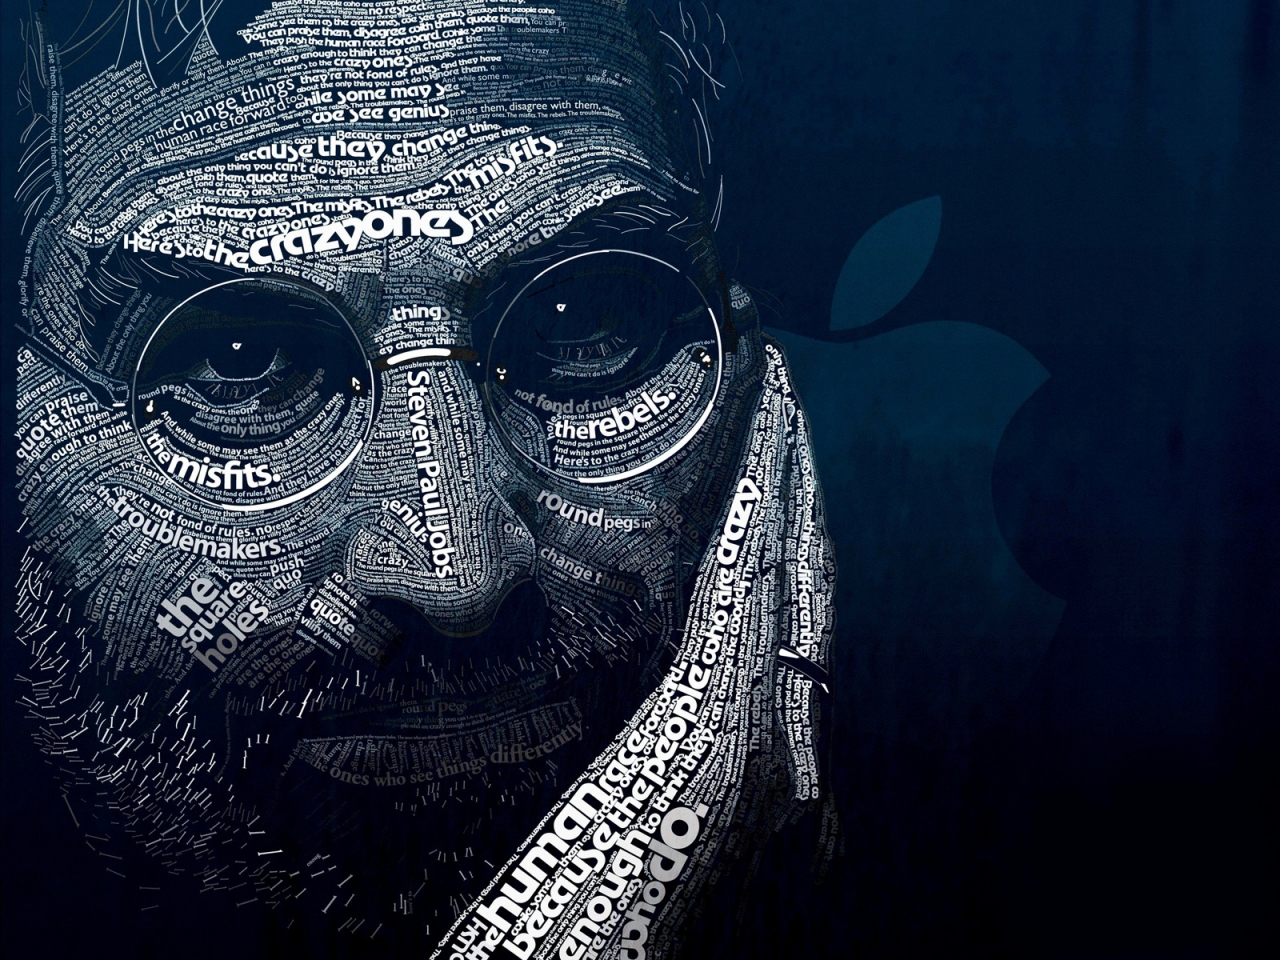 Steve Jobs Word Art for 1280 x 960 resolution